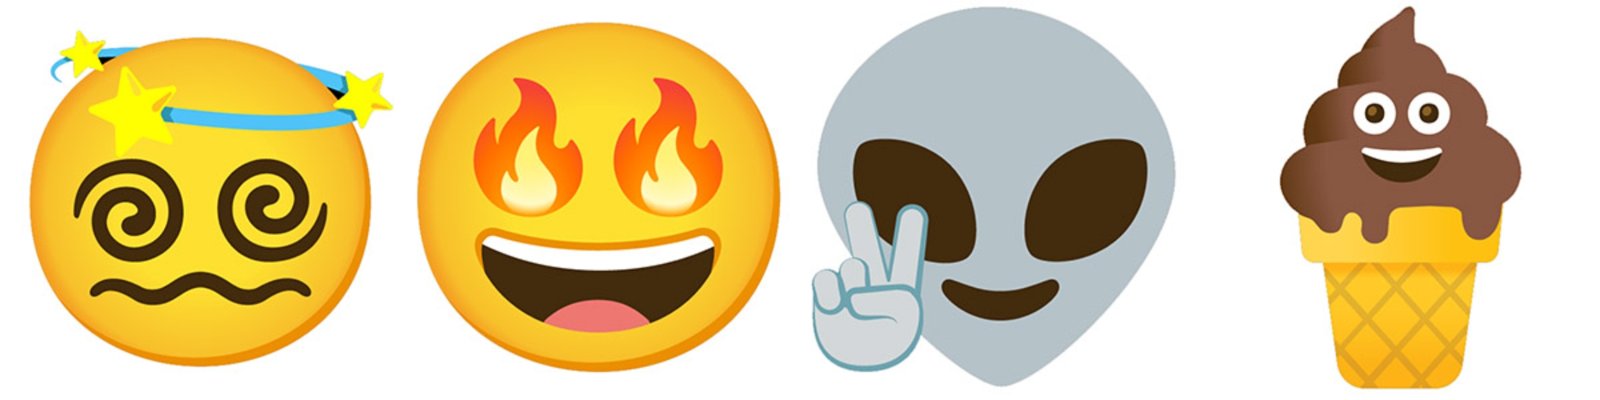 Gboard 8 combo emojis